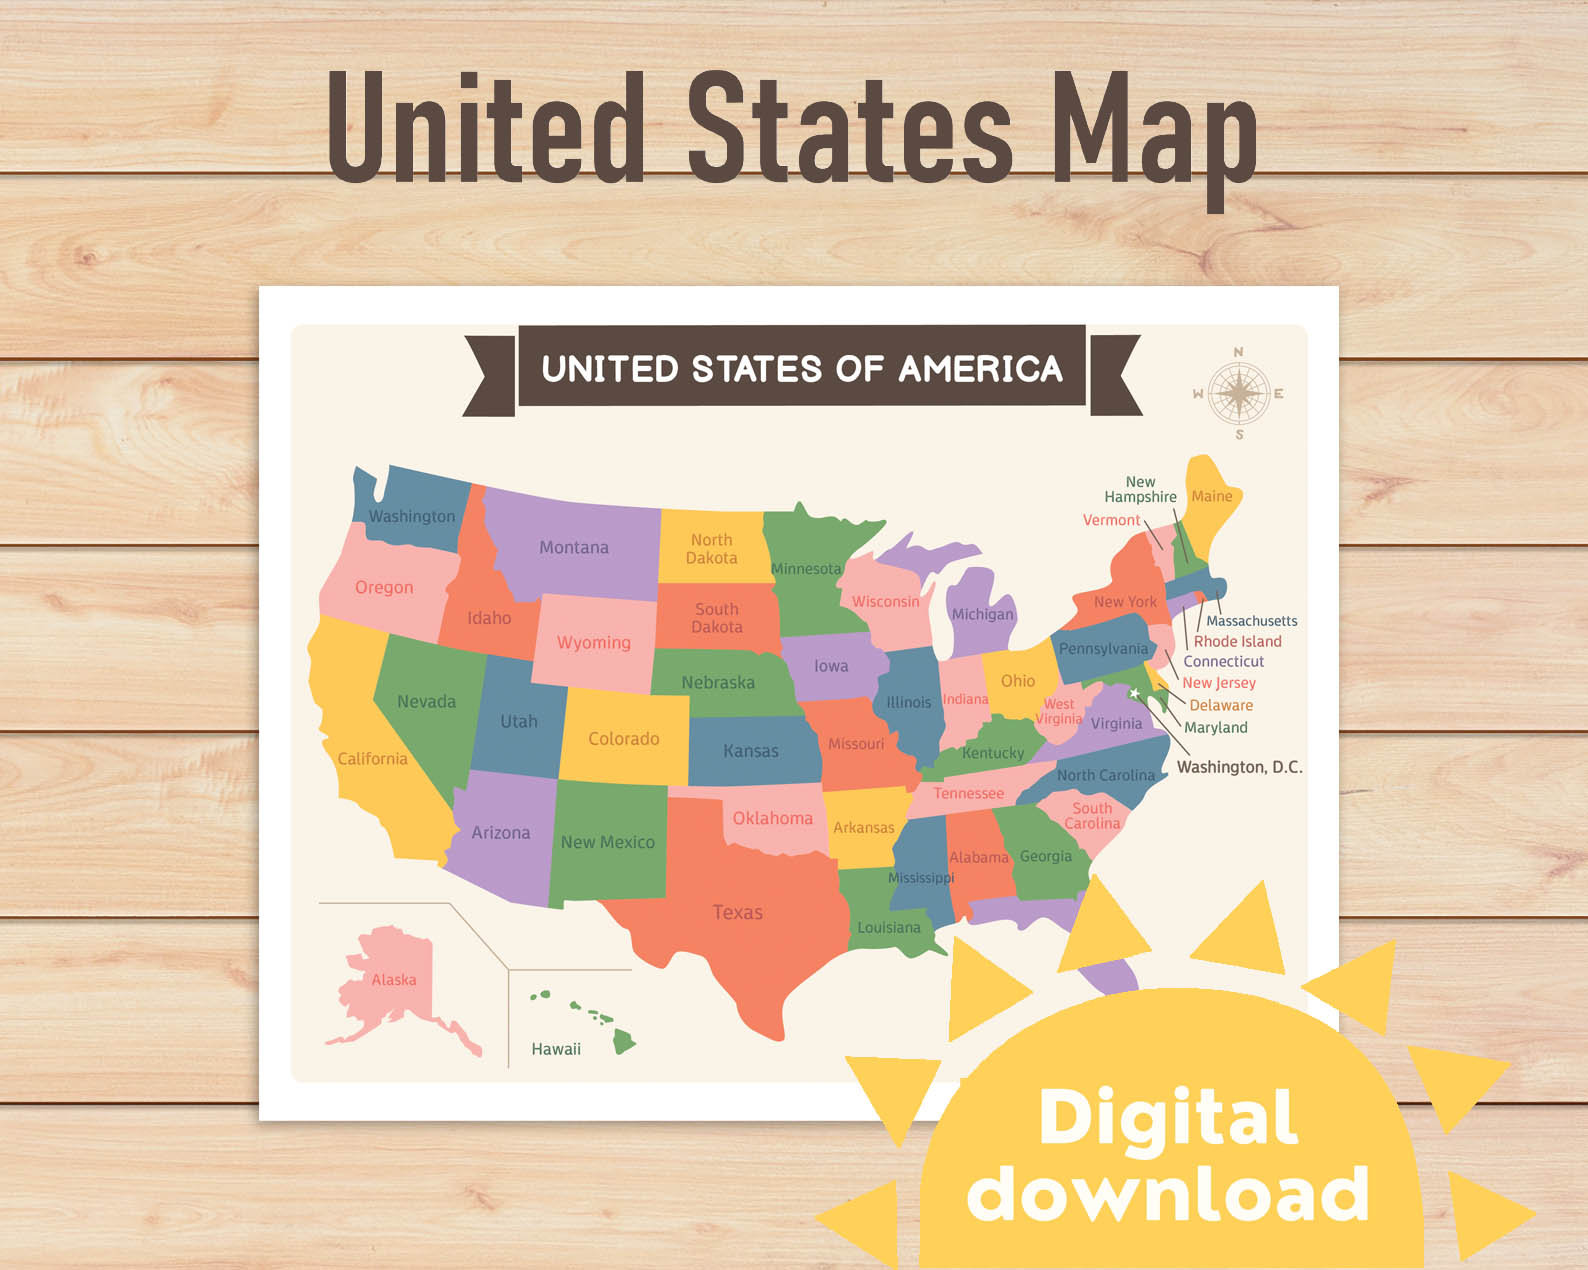 Mapa de EE.UU. para niños, cartel de Los Estados Unidos, Impresión de mapa  ilustrado, Decoración de vivero neutral de género, Arte de pared para niños  pequeños -  España